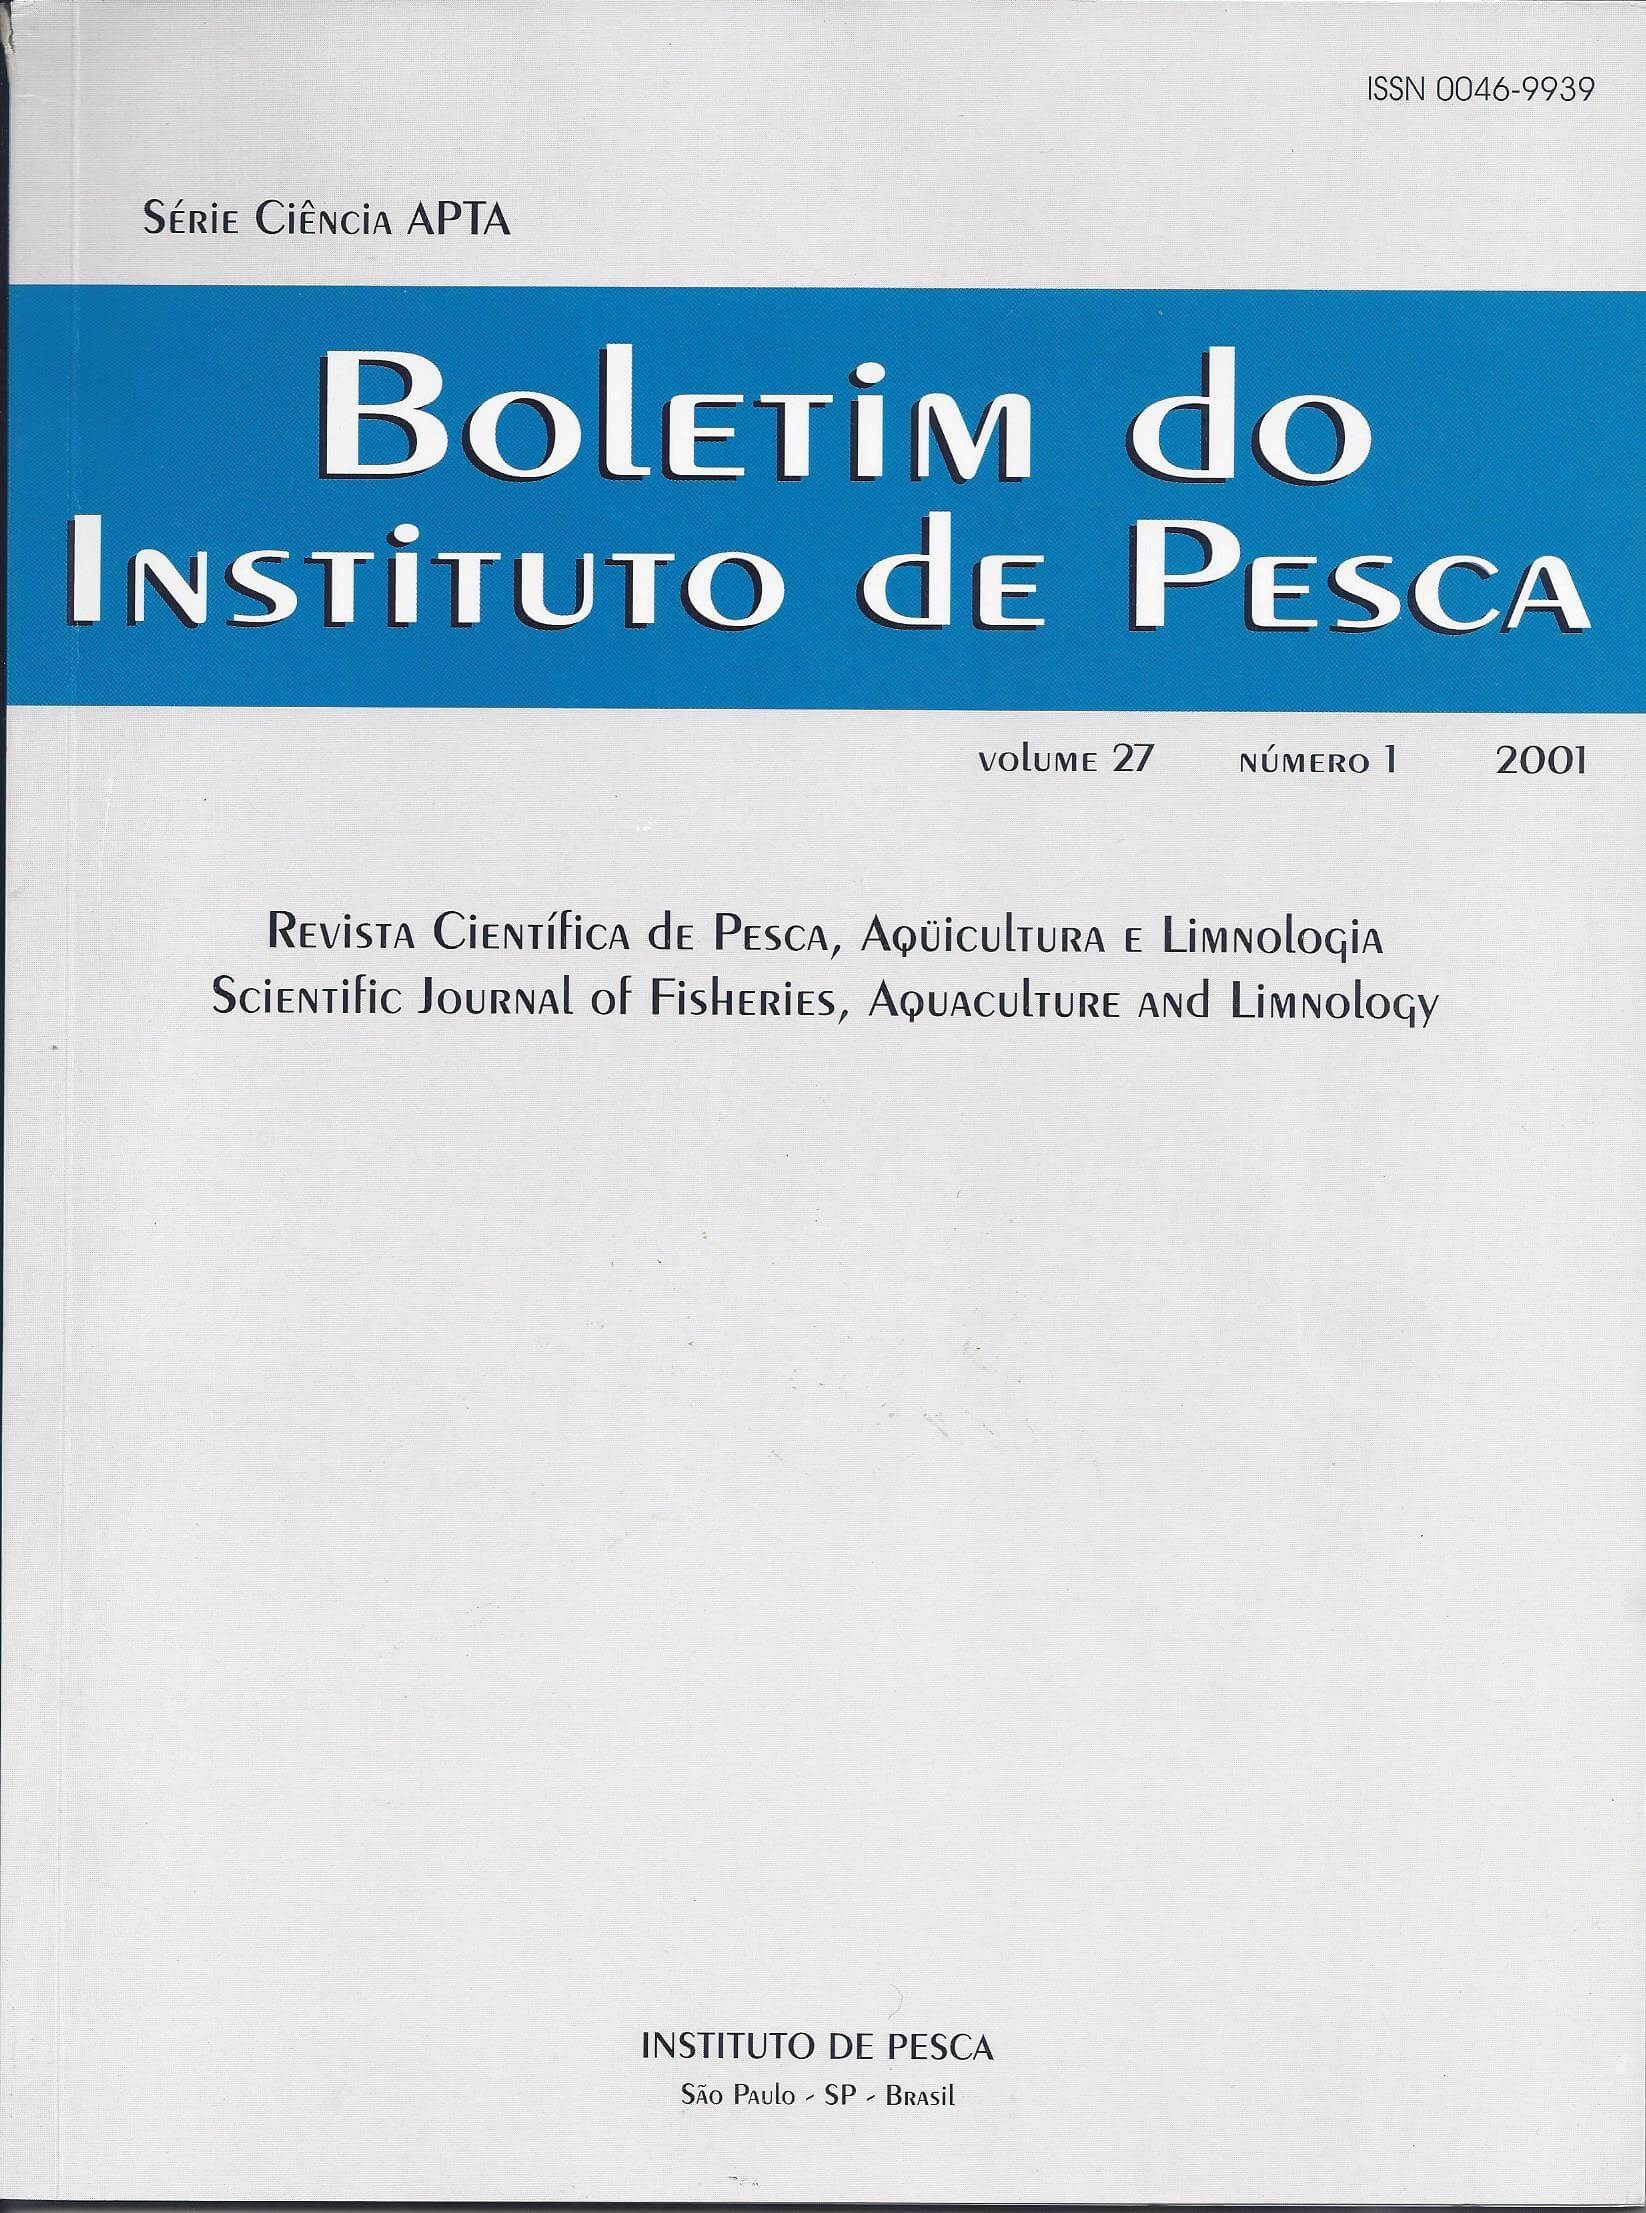 					View Vol. 27 No. 1 (2001): BOLETIM DO INSTITUTO DE PESCA
				